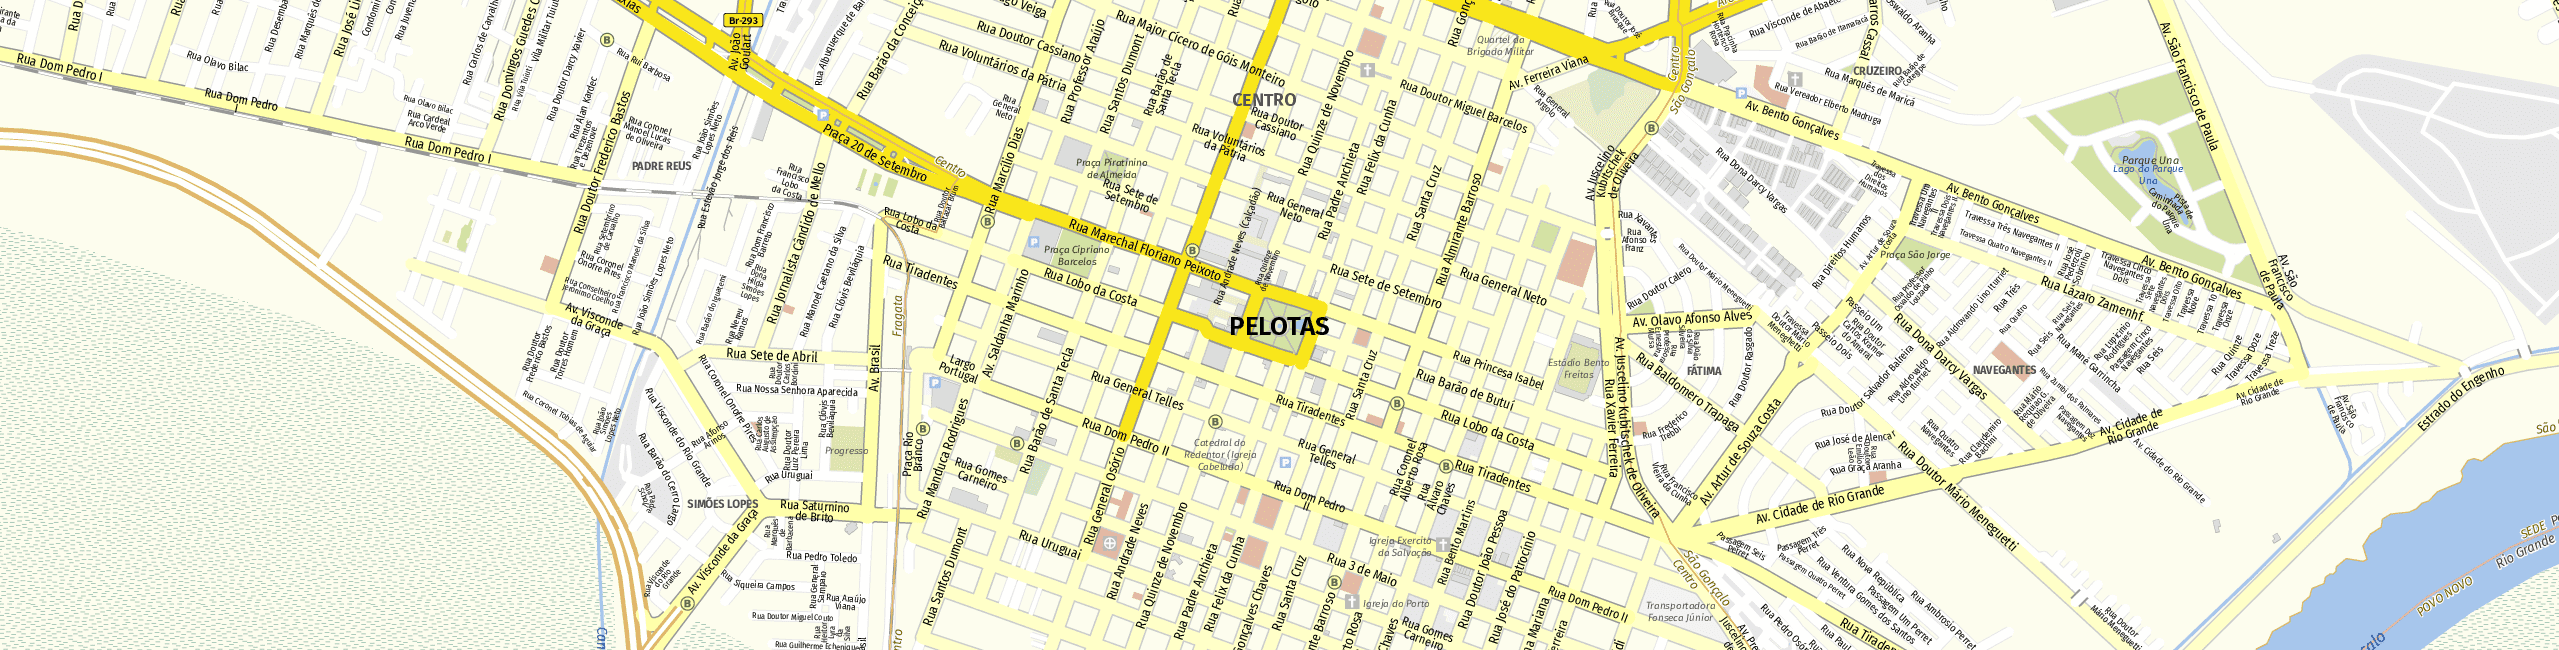 Stadtplan Pelotas zum Downloaden.